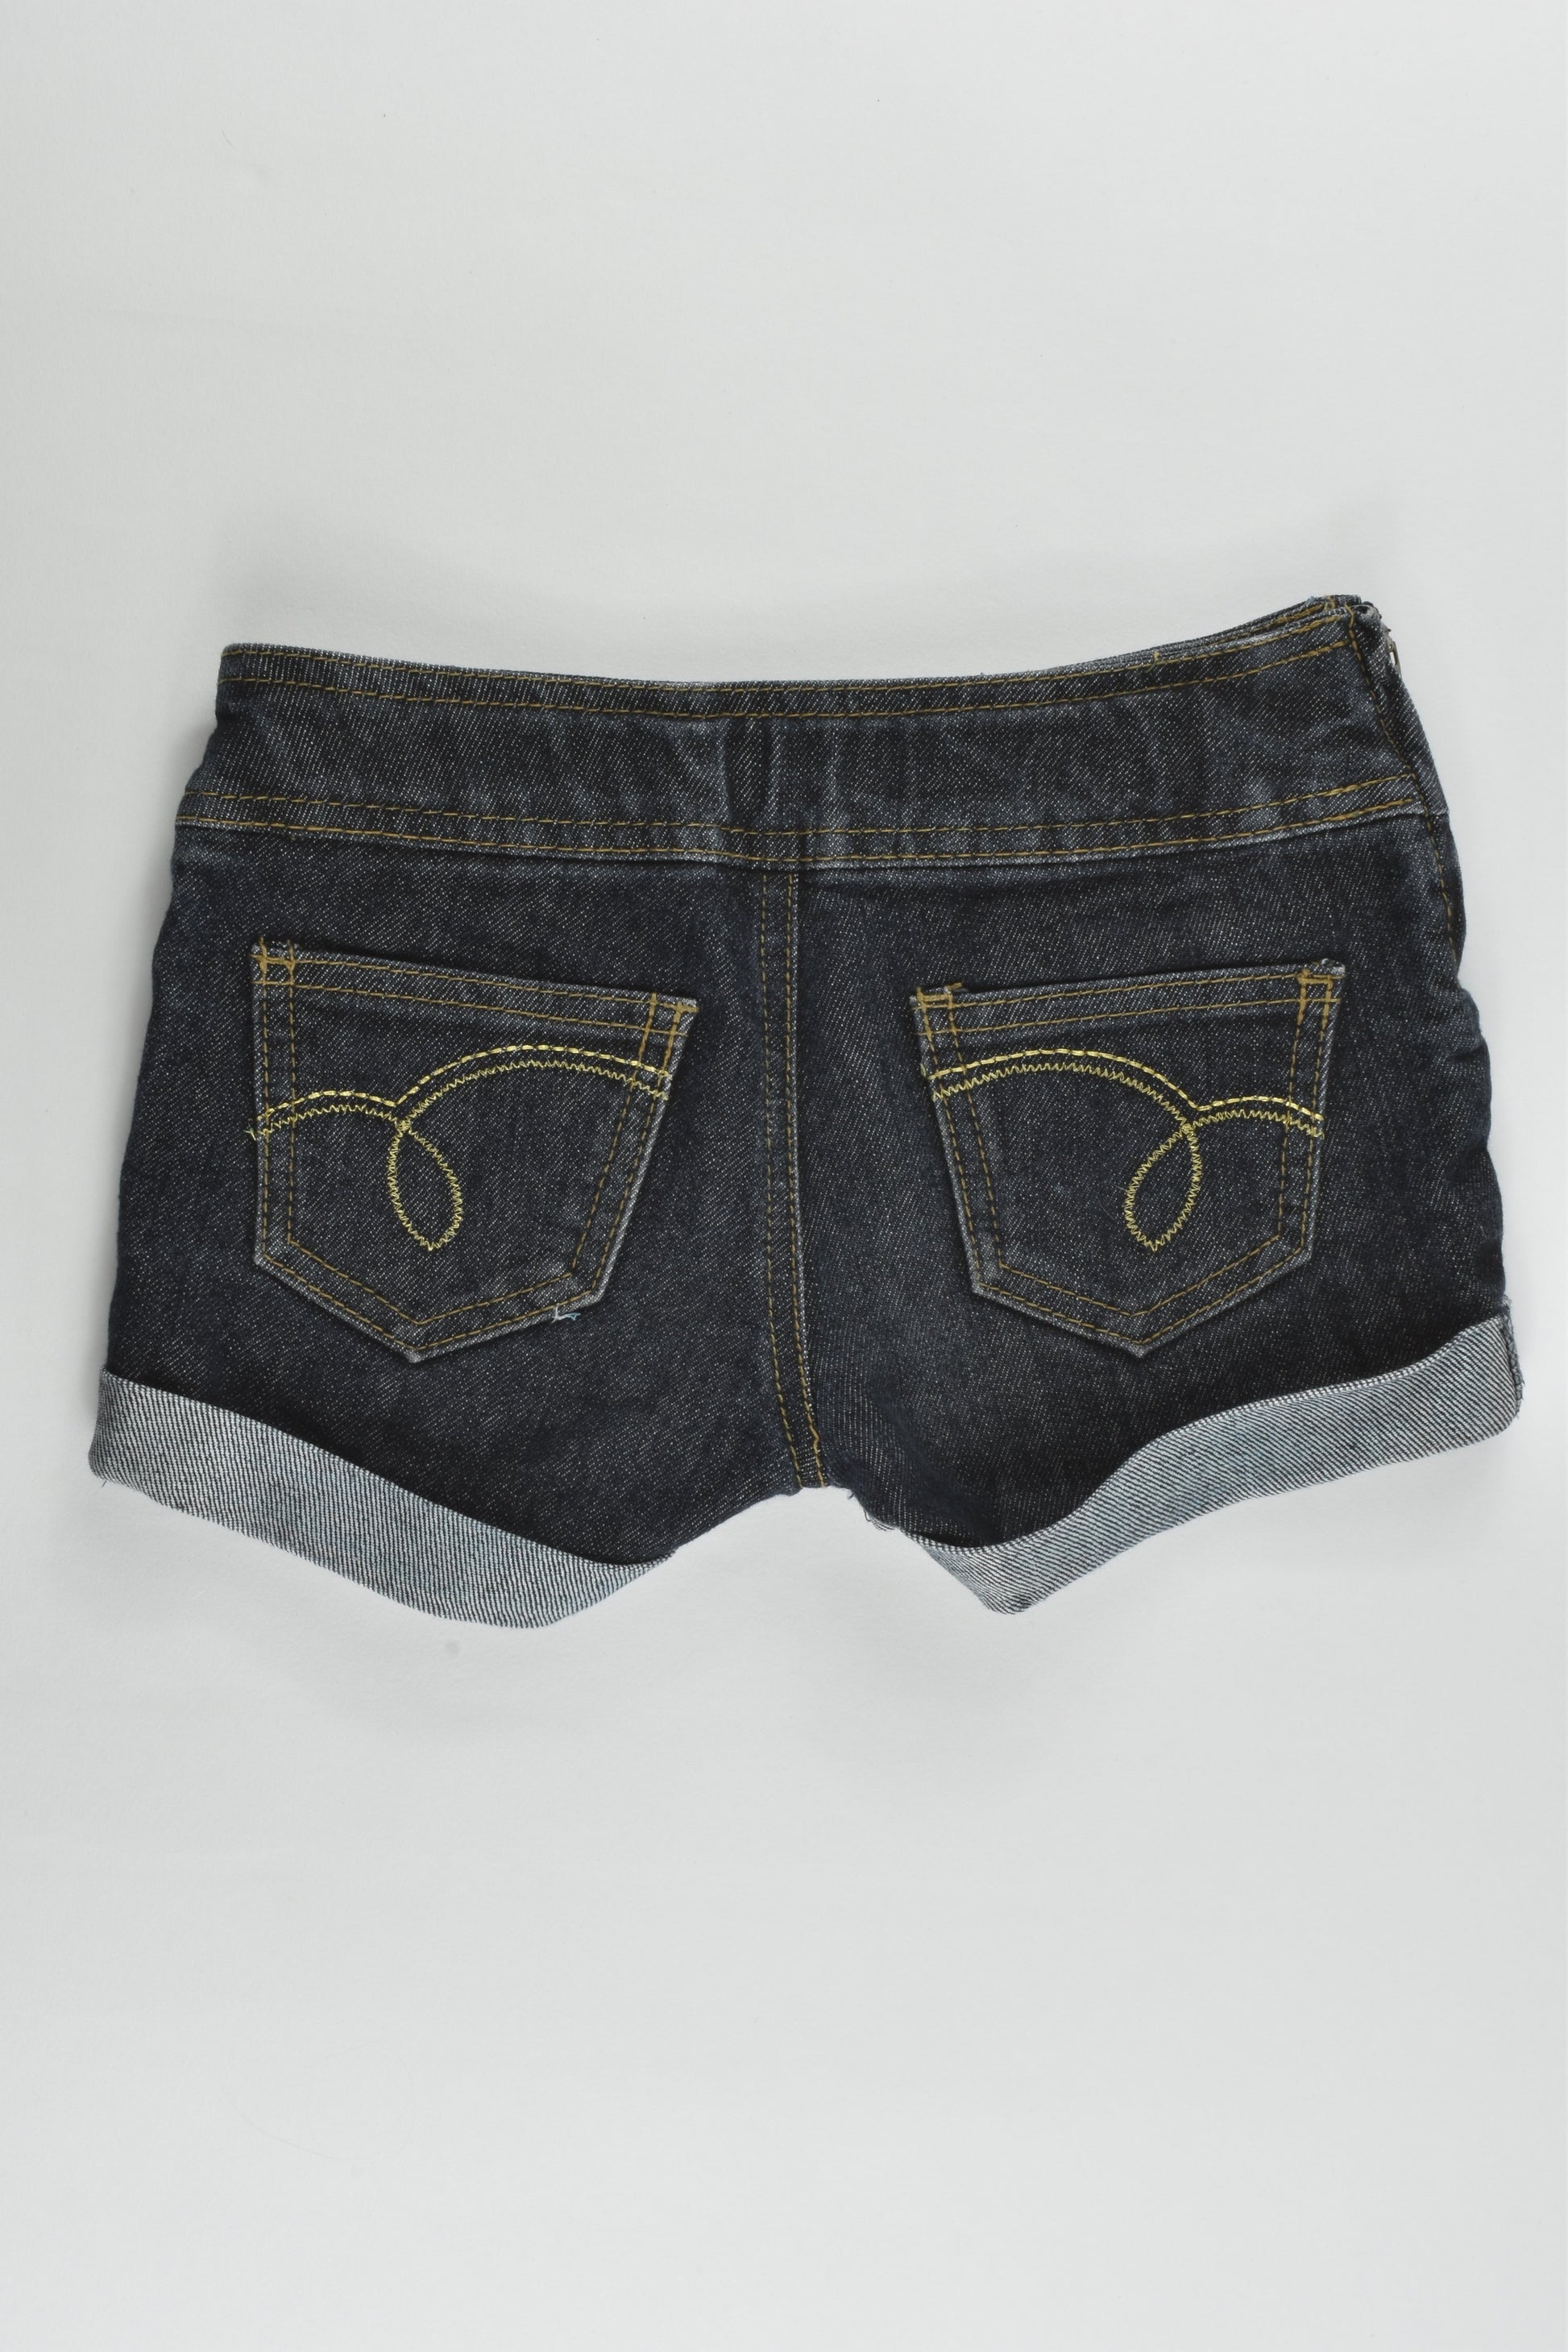 Primark (Denim Company) Size 4-5 (110 cm) Stretchy Denim Shorts